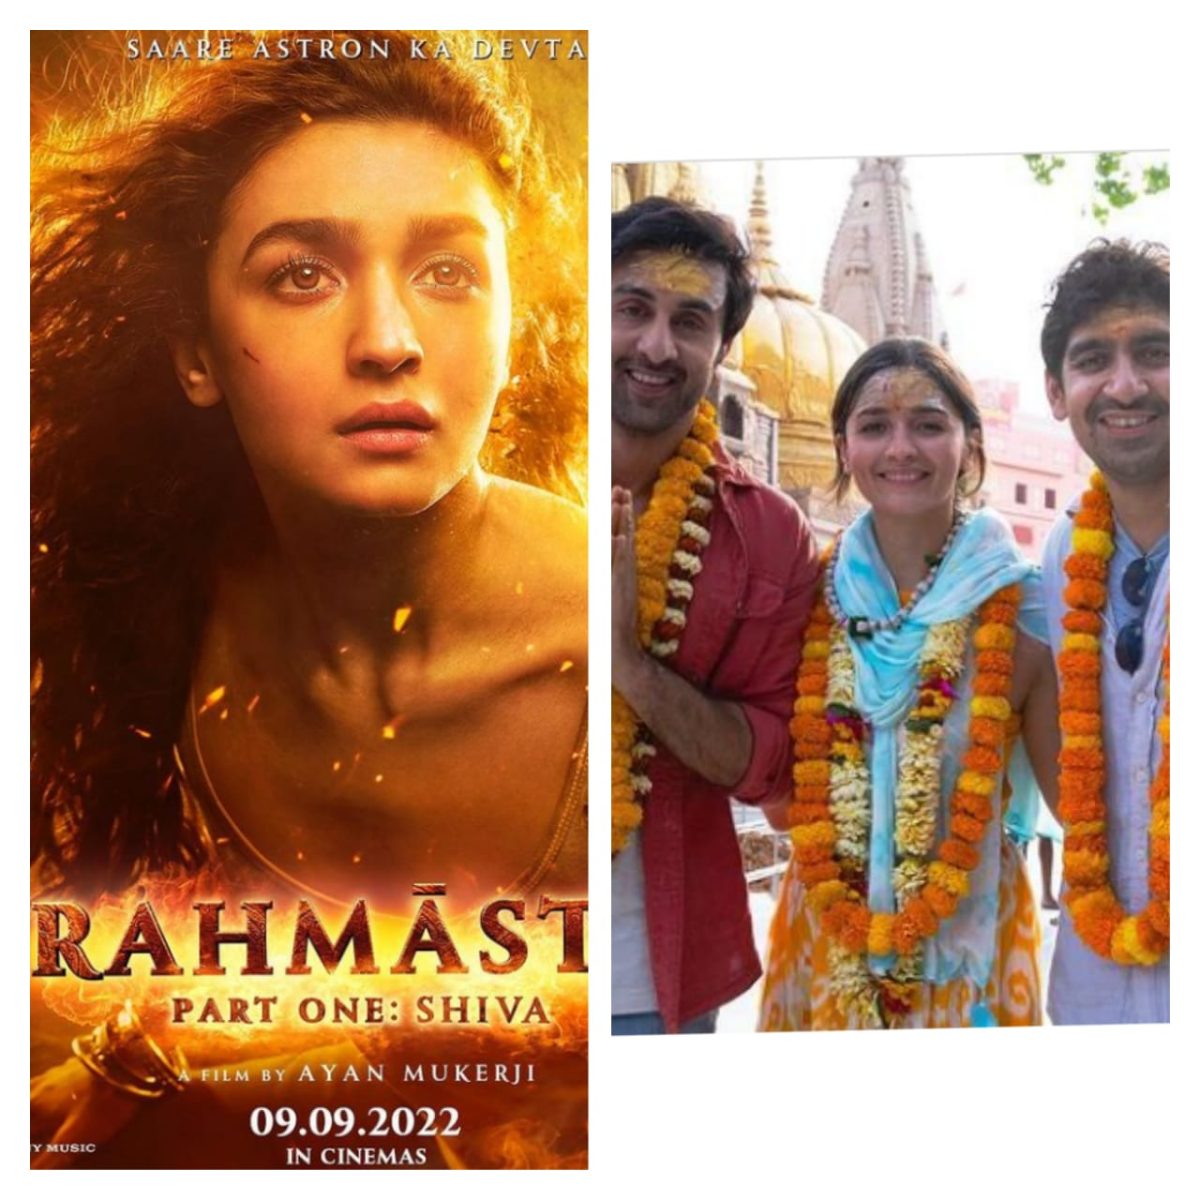 आलिया और रणबीर की फिल्म ब्रह्मास्त्र की शूटिंग खत्म! दोनों लवबर्ड्स की फिल्म इस दिन होगी रिलीज